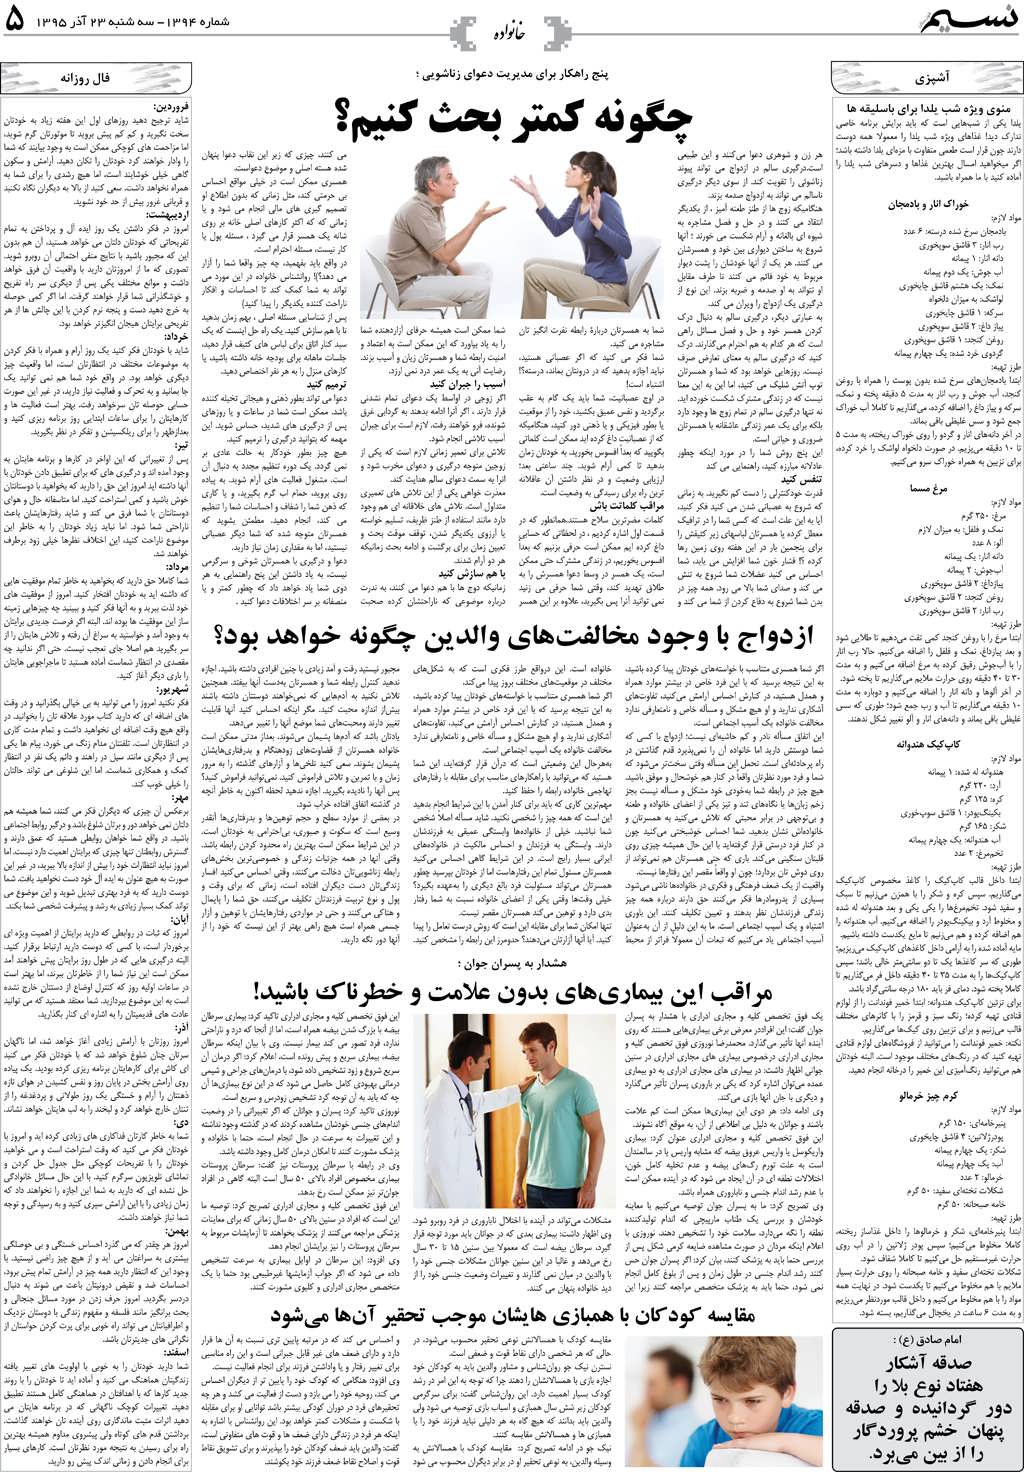 صفحه خانواده روزنامه نسیم شماره 1394